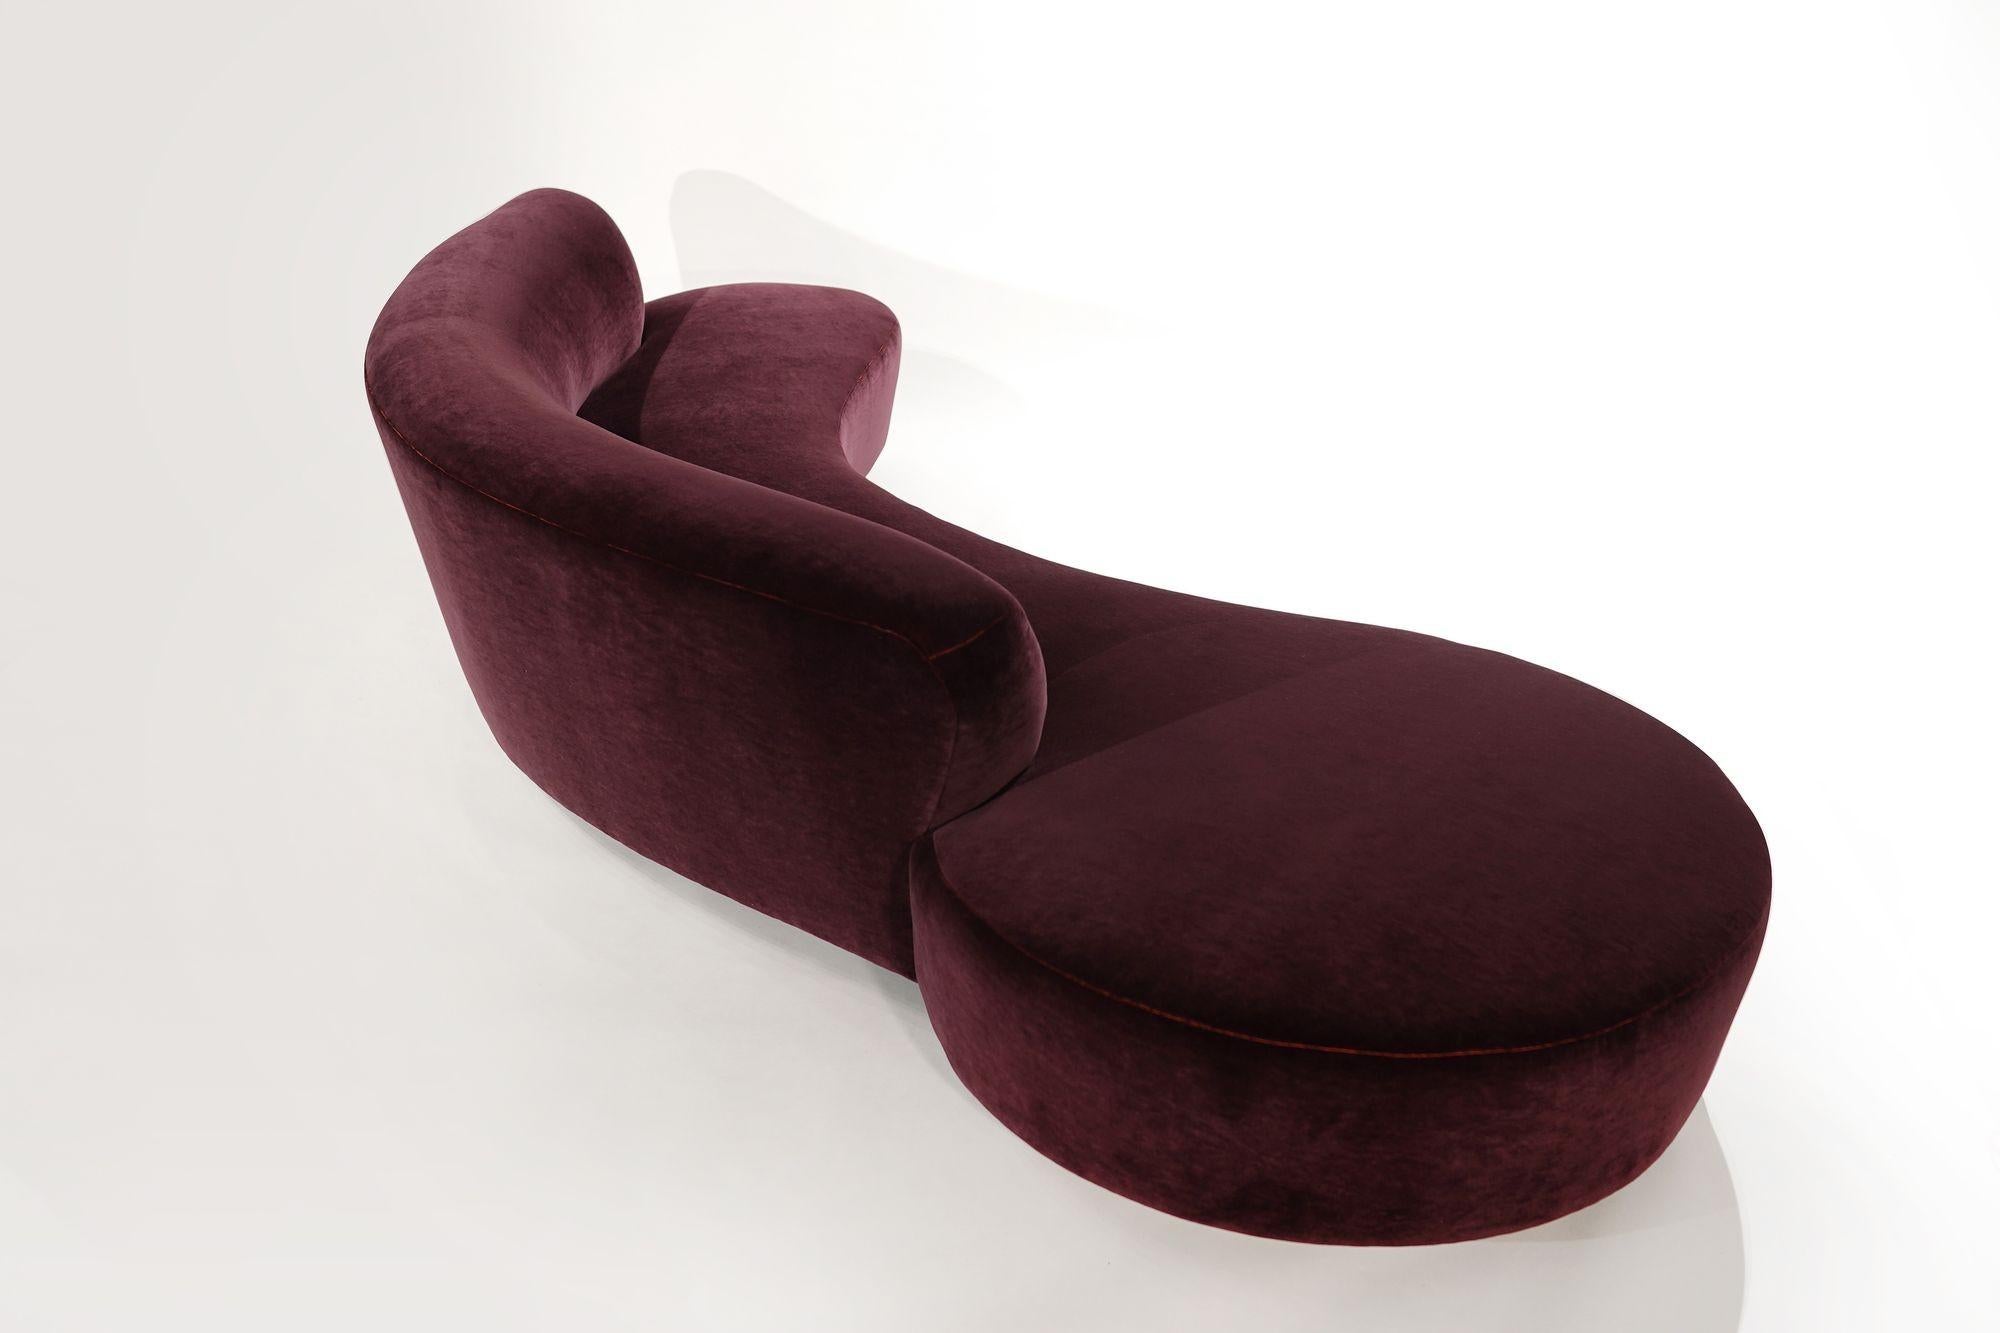 American Serpentine Sofa by Vladimir Kagan in Burgundy Mohair, Model 150BS